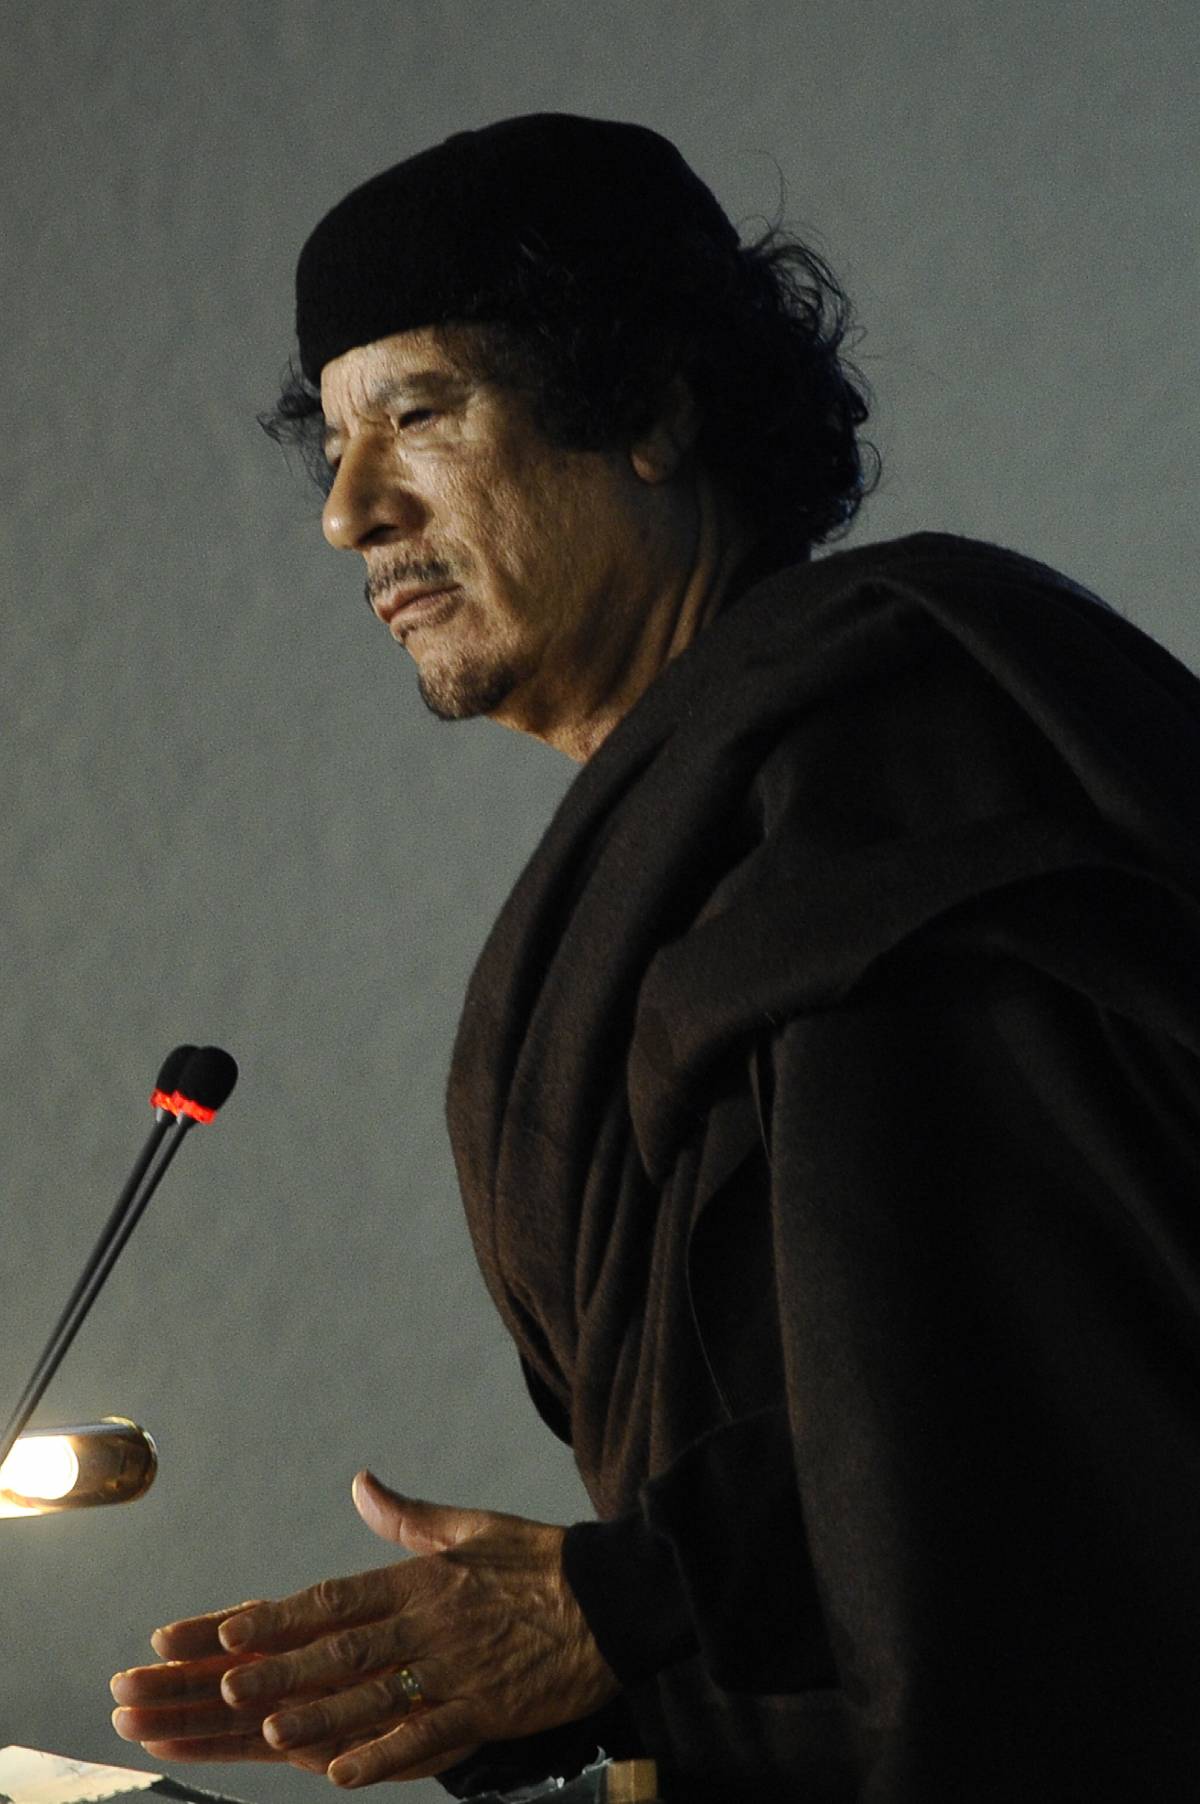 Guerra in libia, che fine ha fatto Gheddafi?					 
Parigi: "Prende forma una soluzione politica"